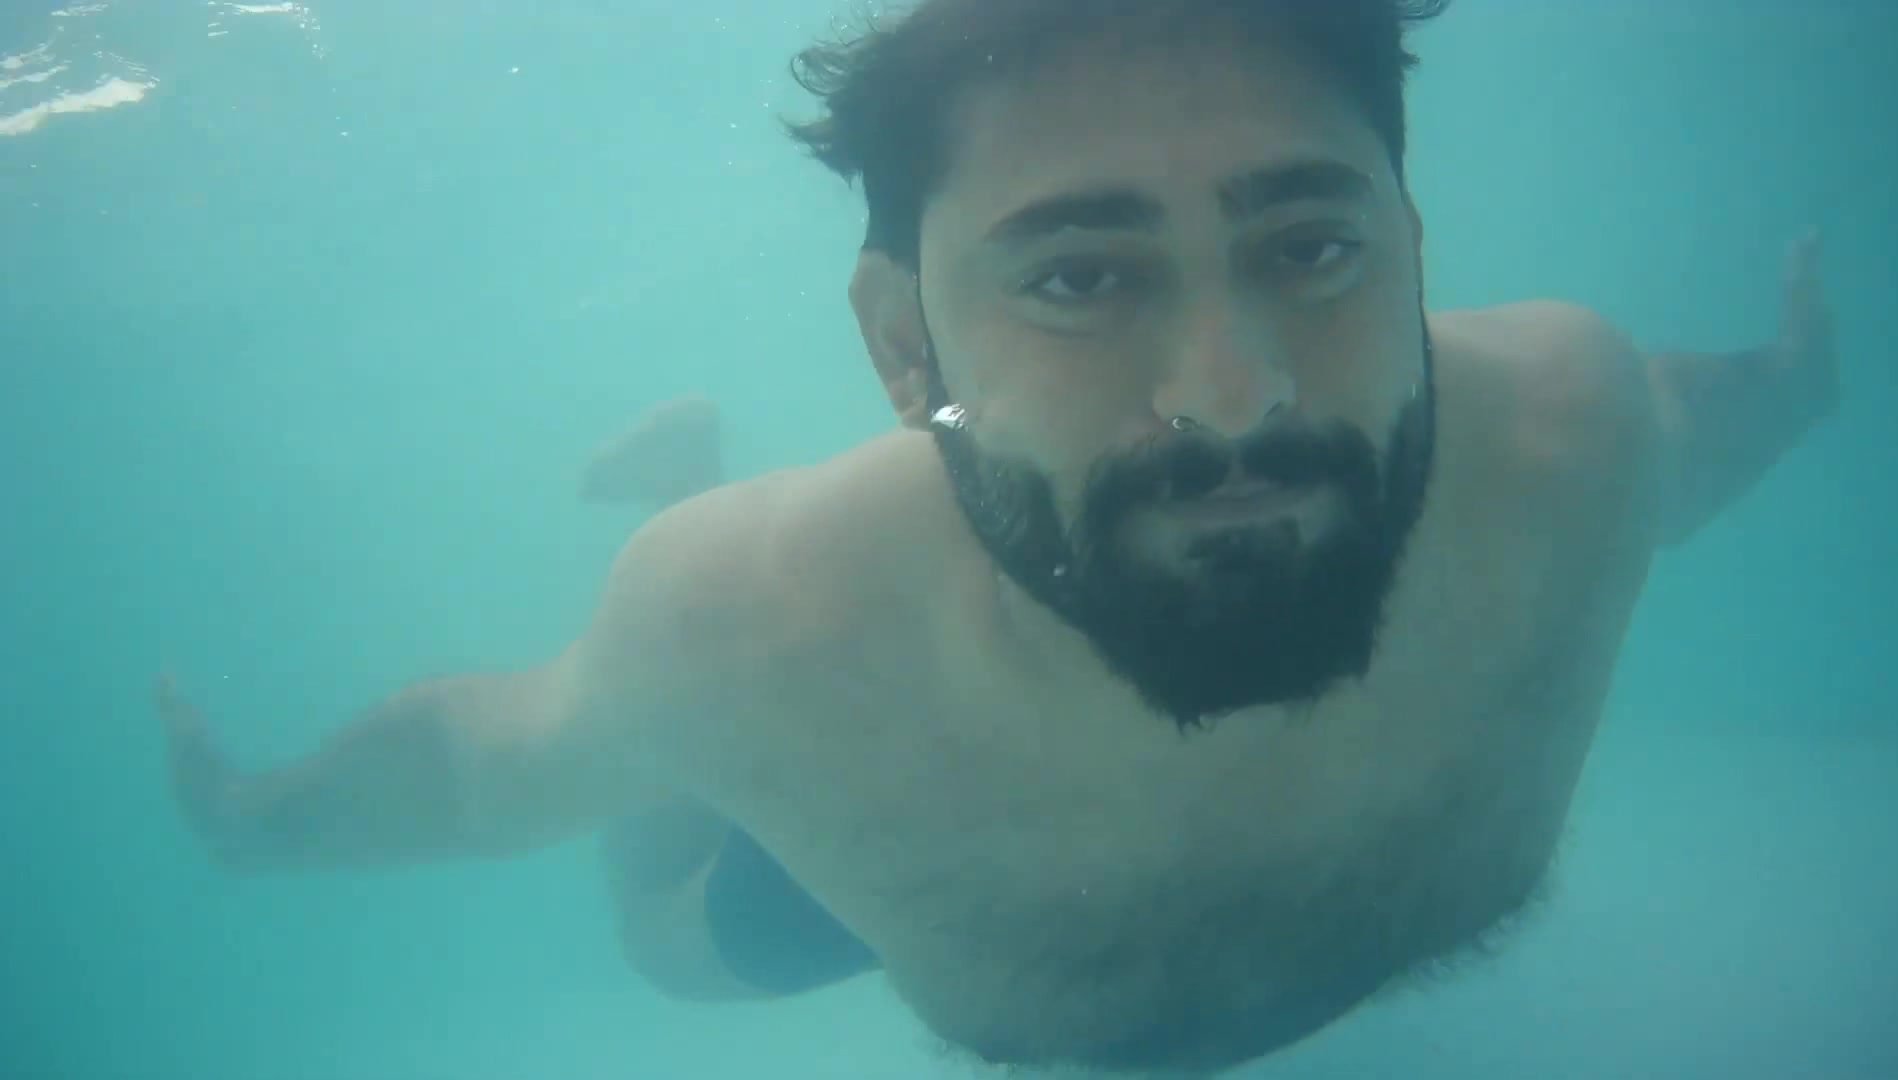 Arab cuties barefaced underwater in pool